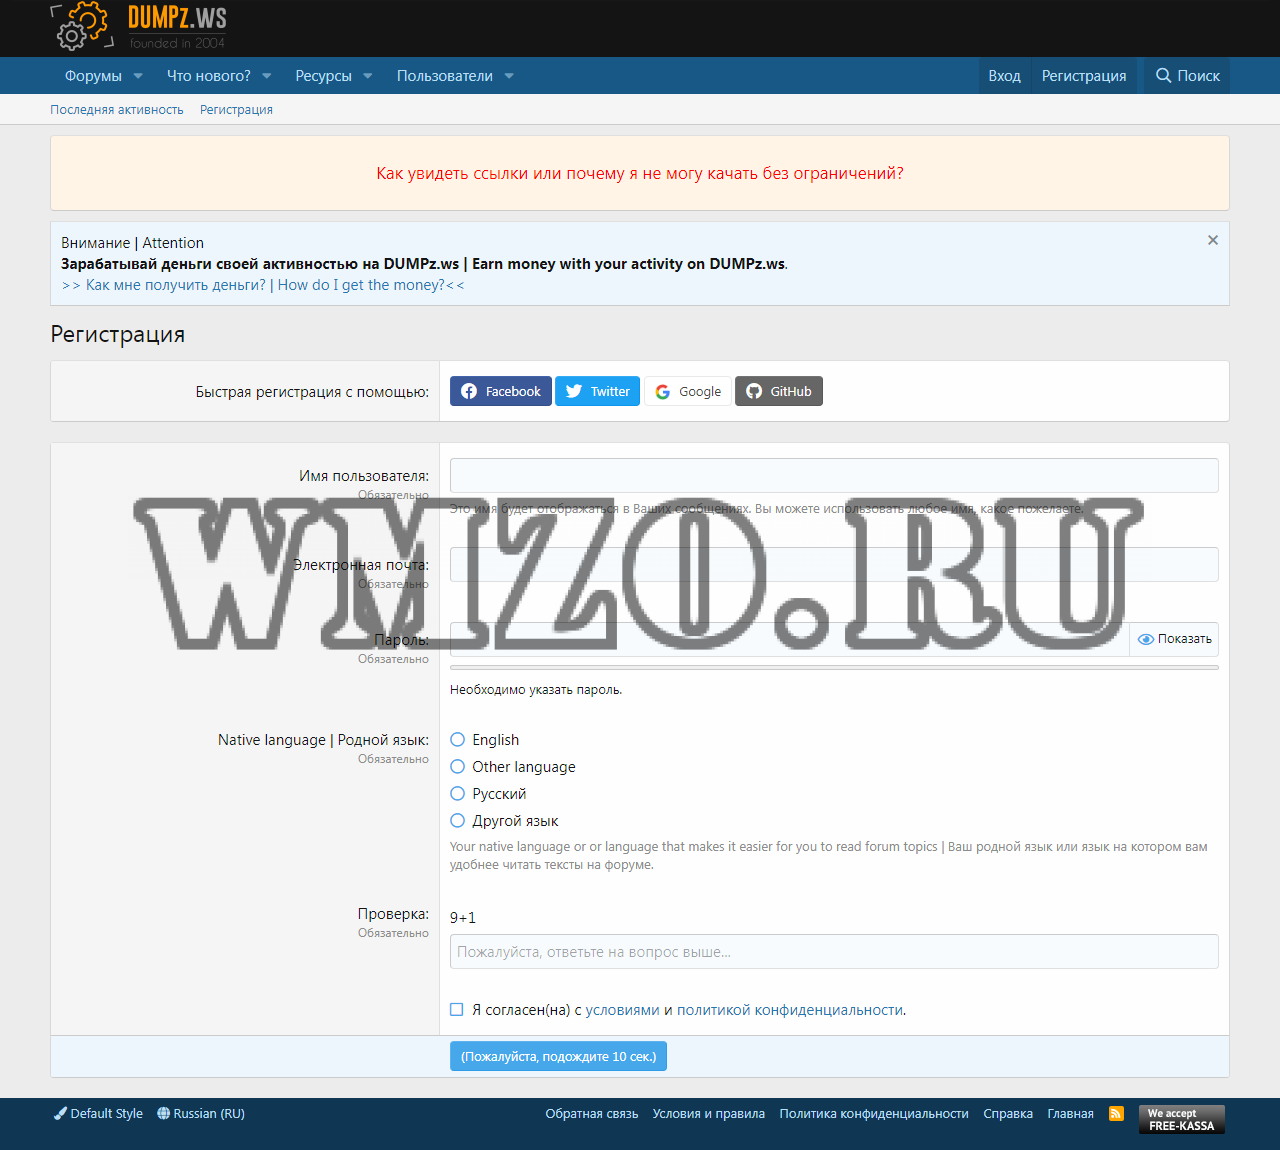 Полный дамп форума dumpz.ws (.ru) от 20.07.2020